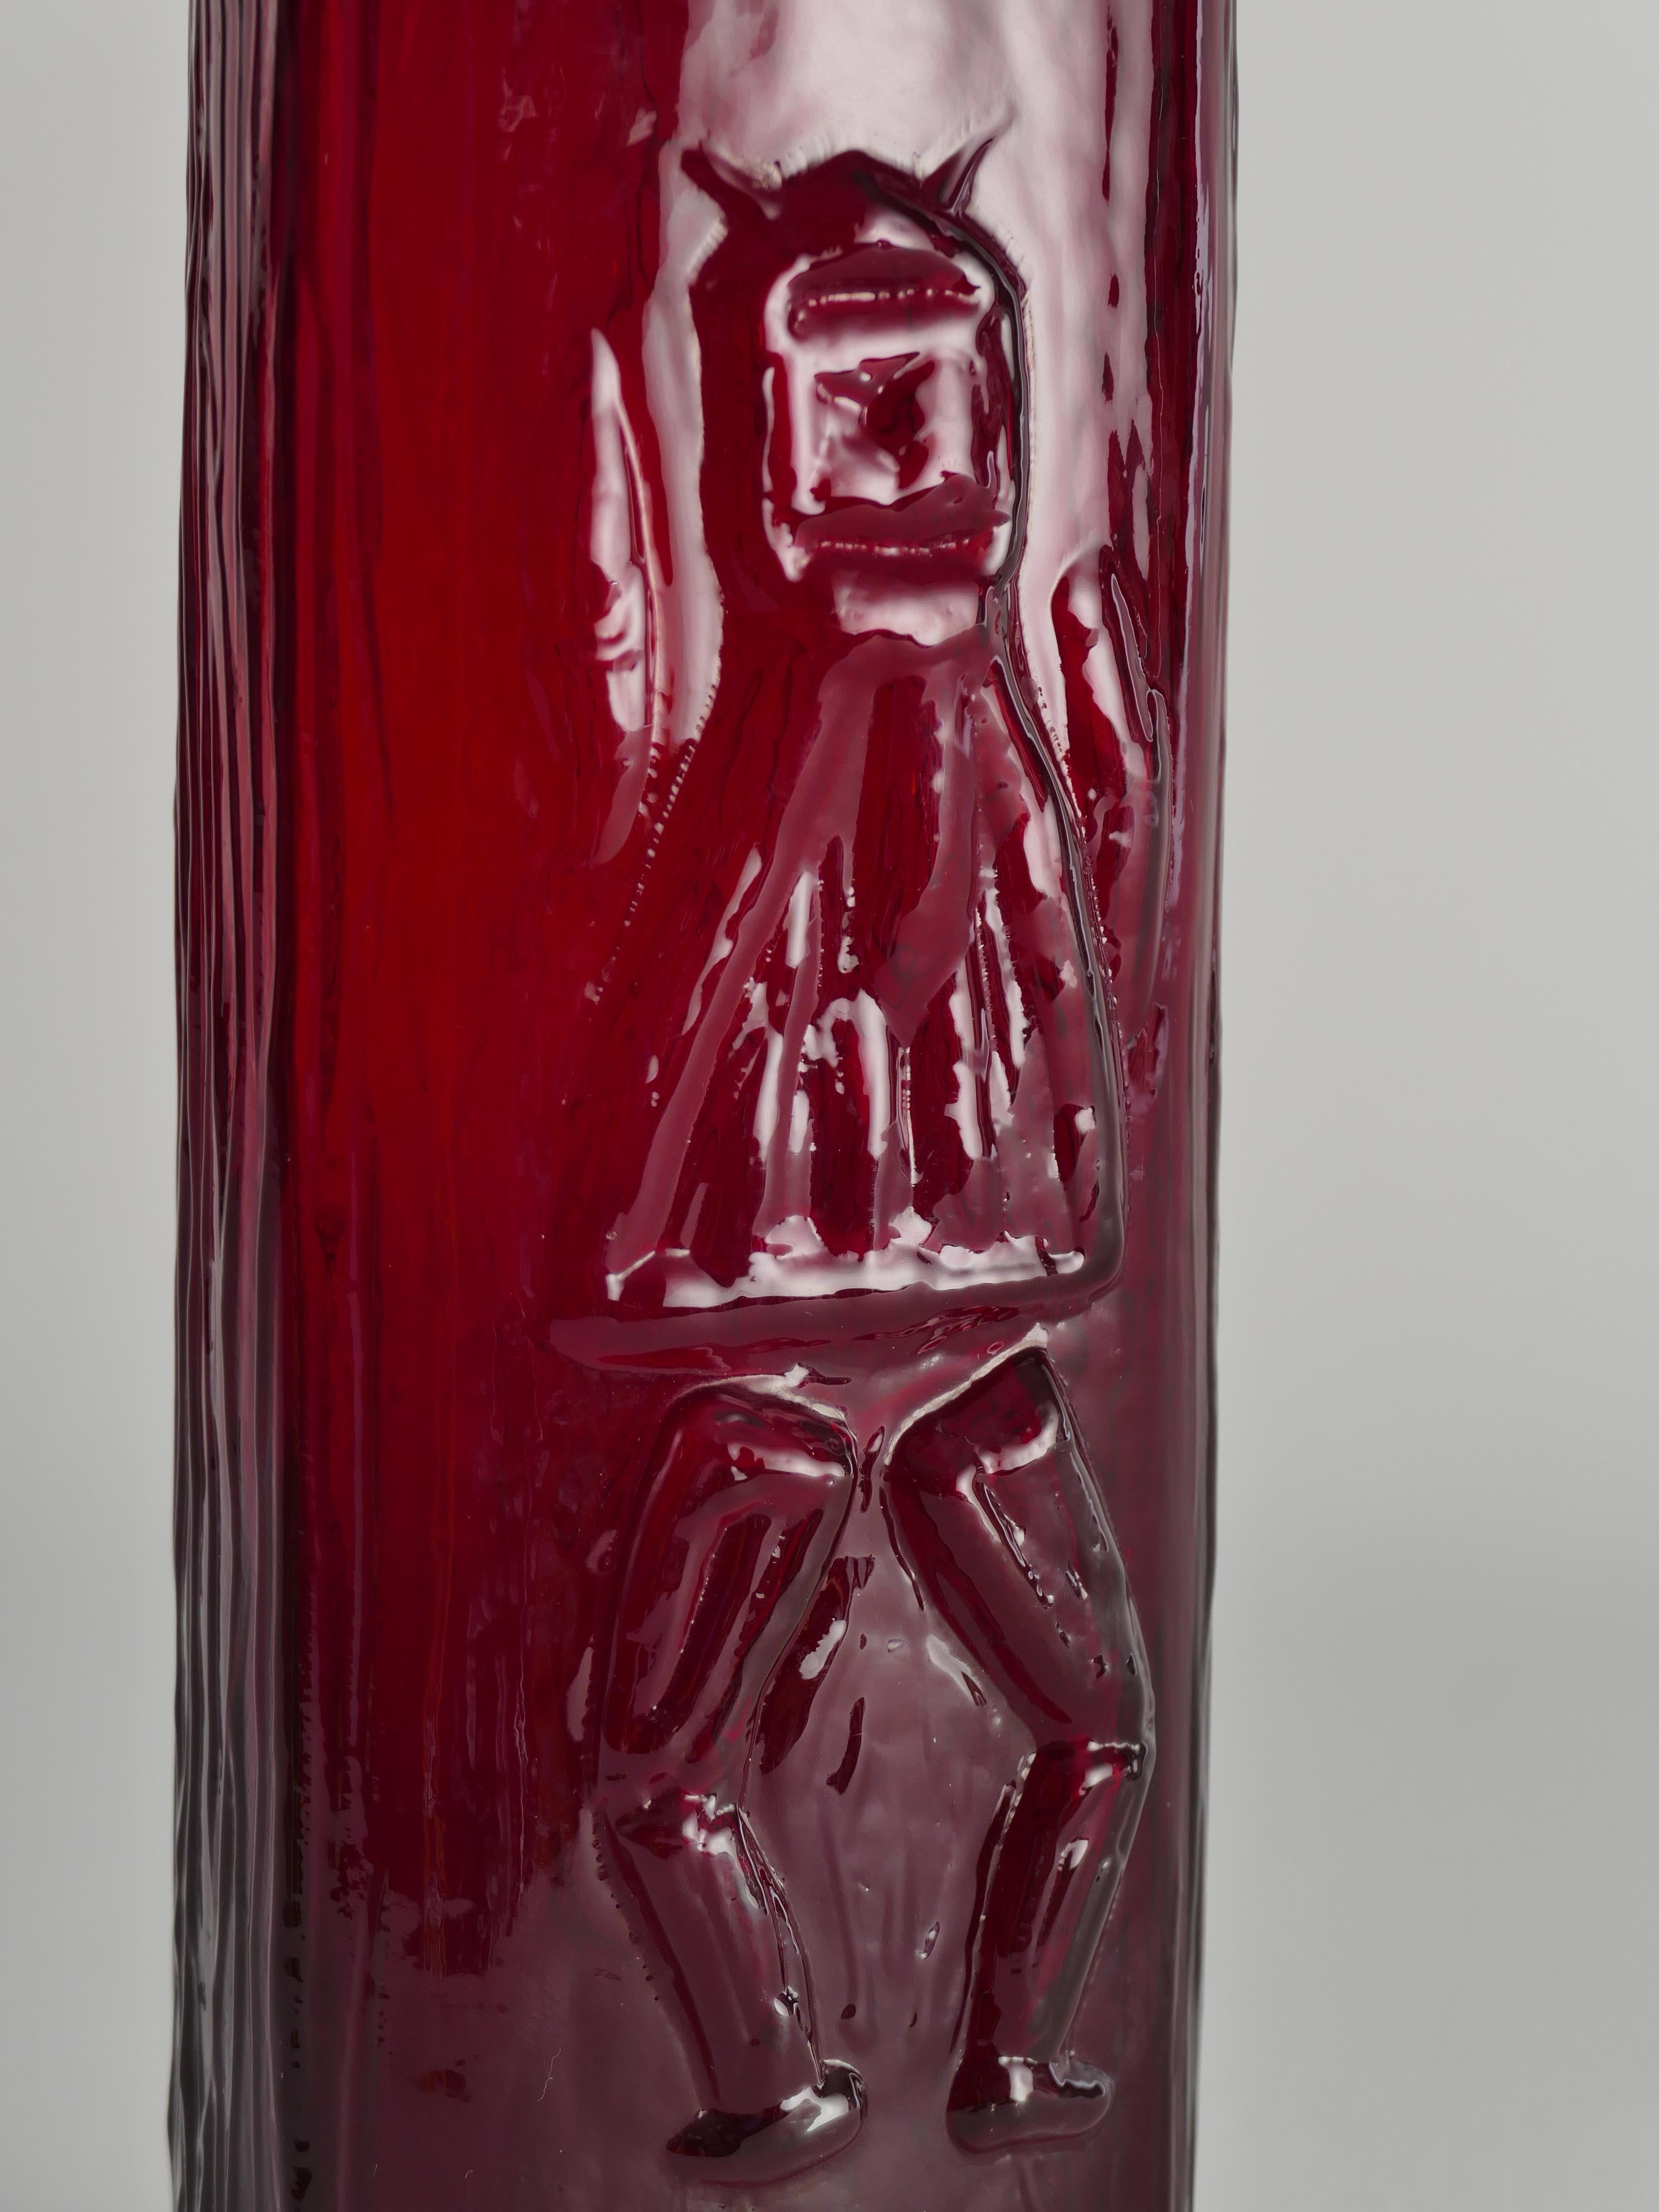 Vase triangulaire en verre soufflé scandinave moderne rouge diable par Christer Sjögren pour Lindshammar 1960s. Il a mis au point une technique spéciale consistant à souffler le morceau de verre dans une cavité faite de briques.  
La surface rouge